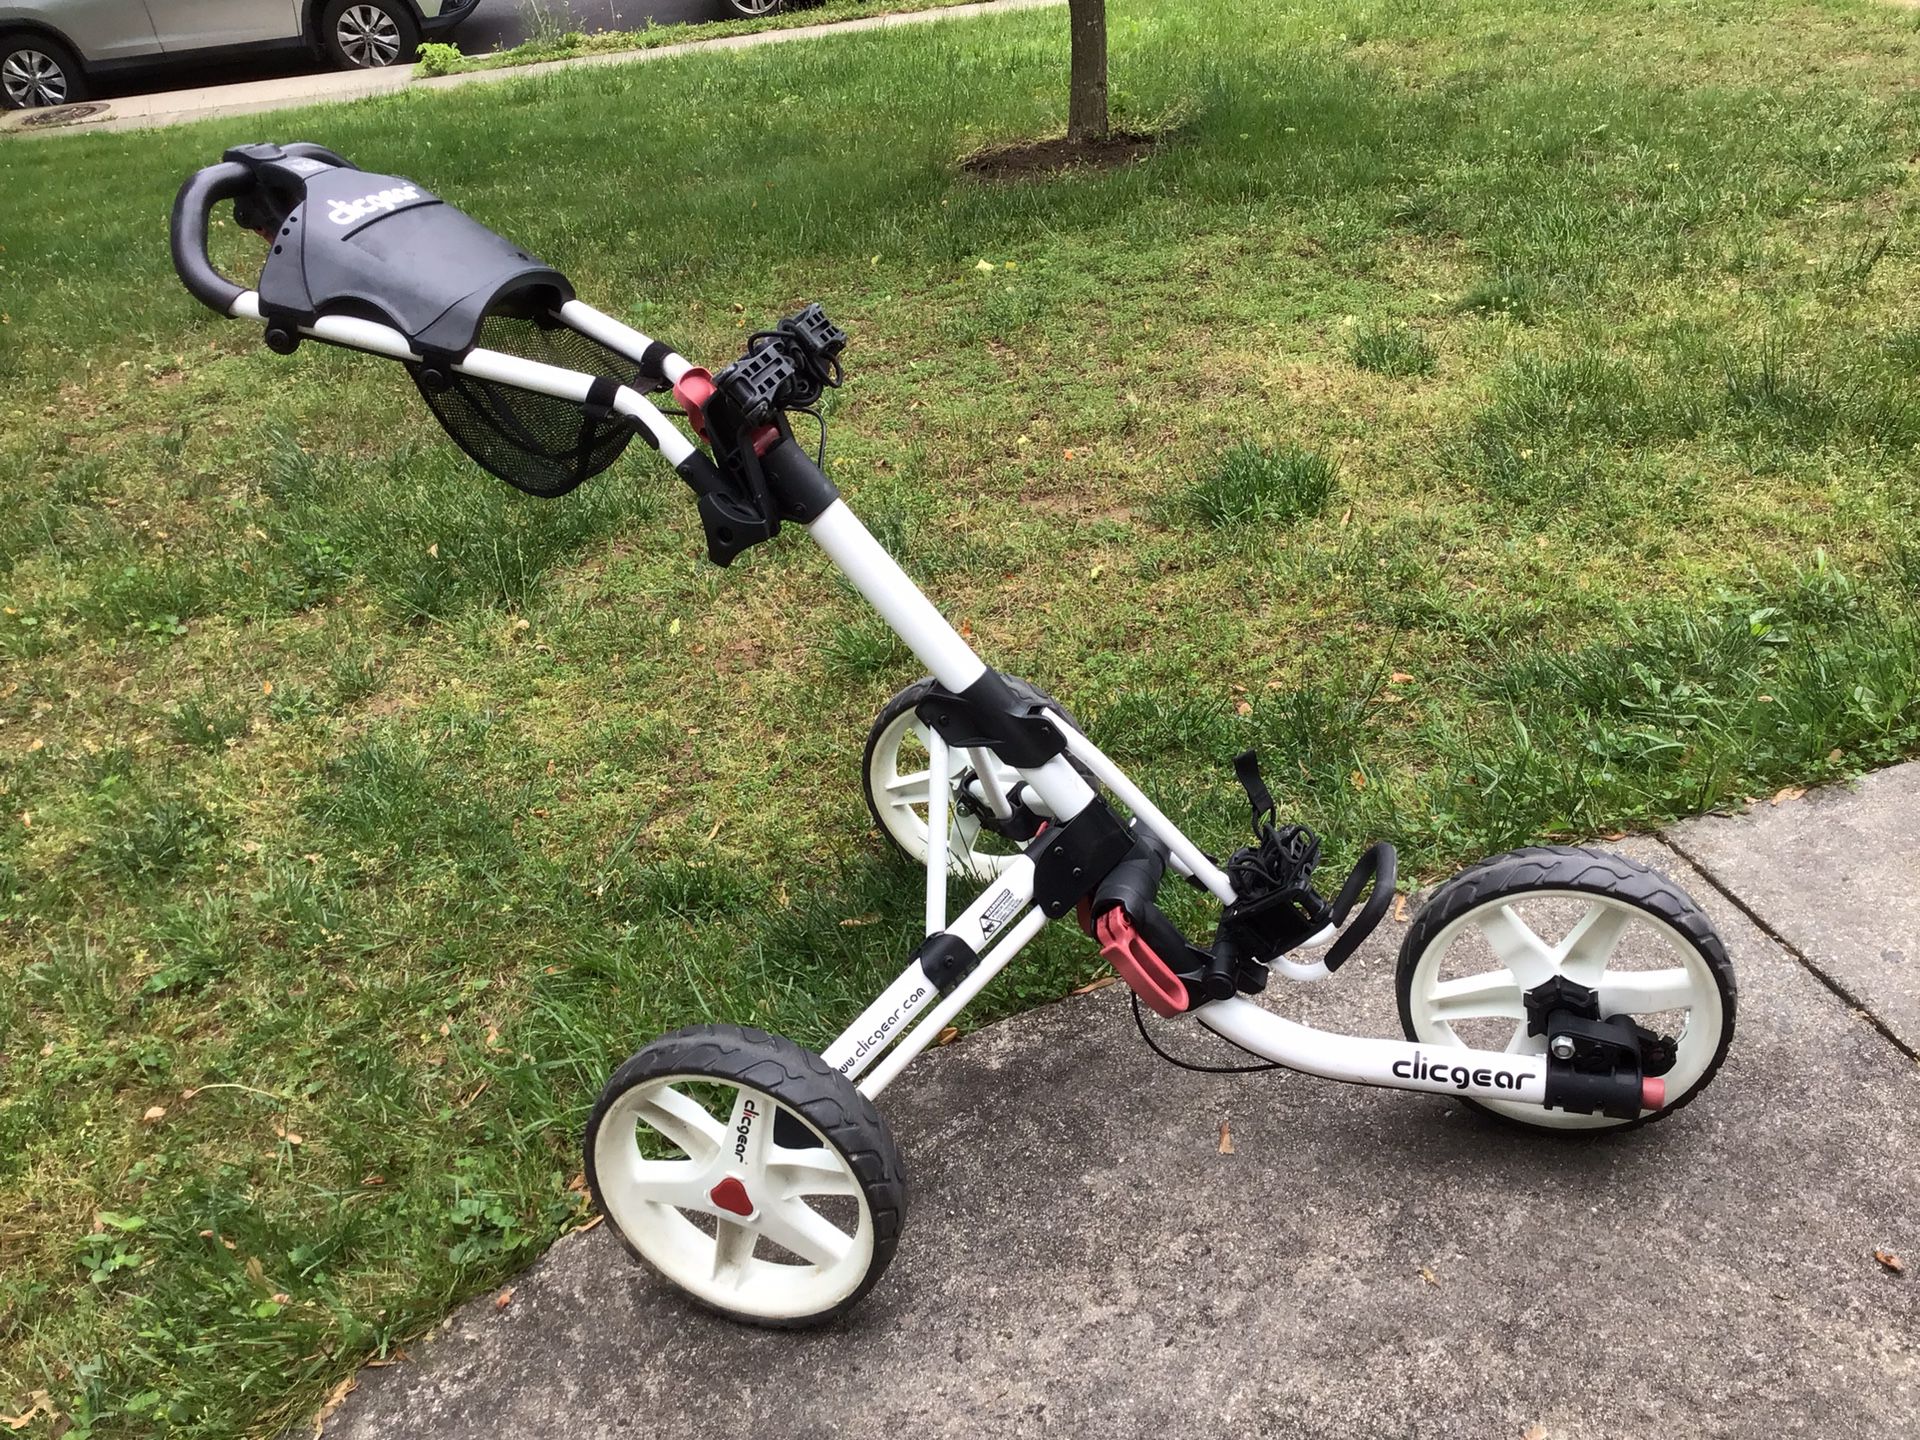 Clicgear 3.5+ golf push cart